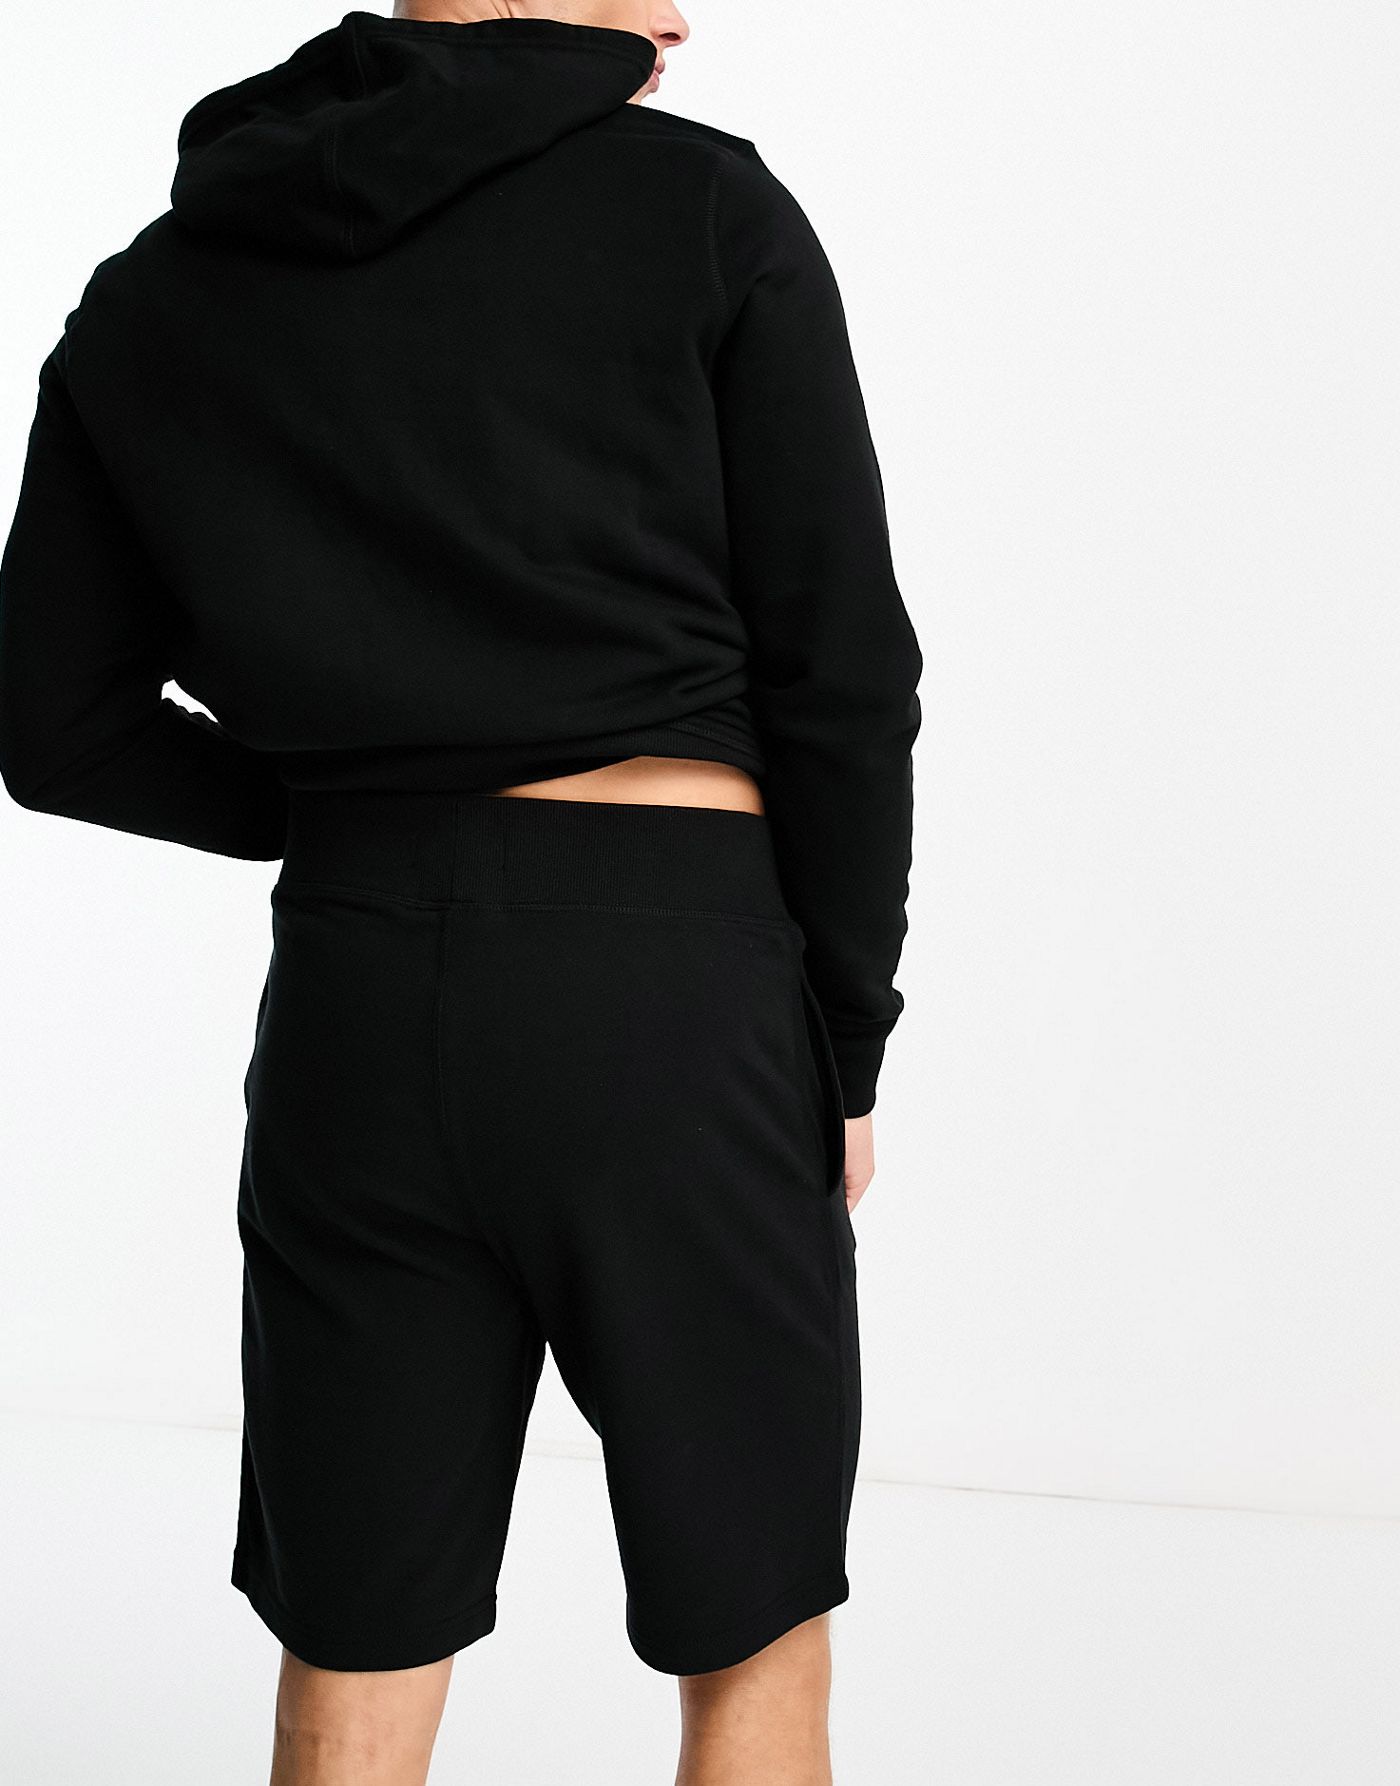 Tommy Hilfiger Original shorts in black 